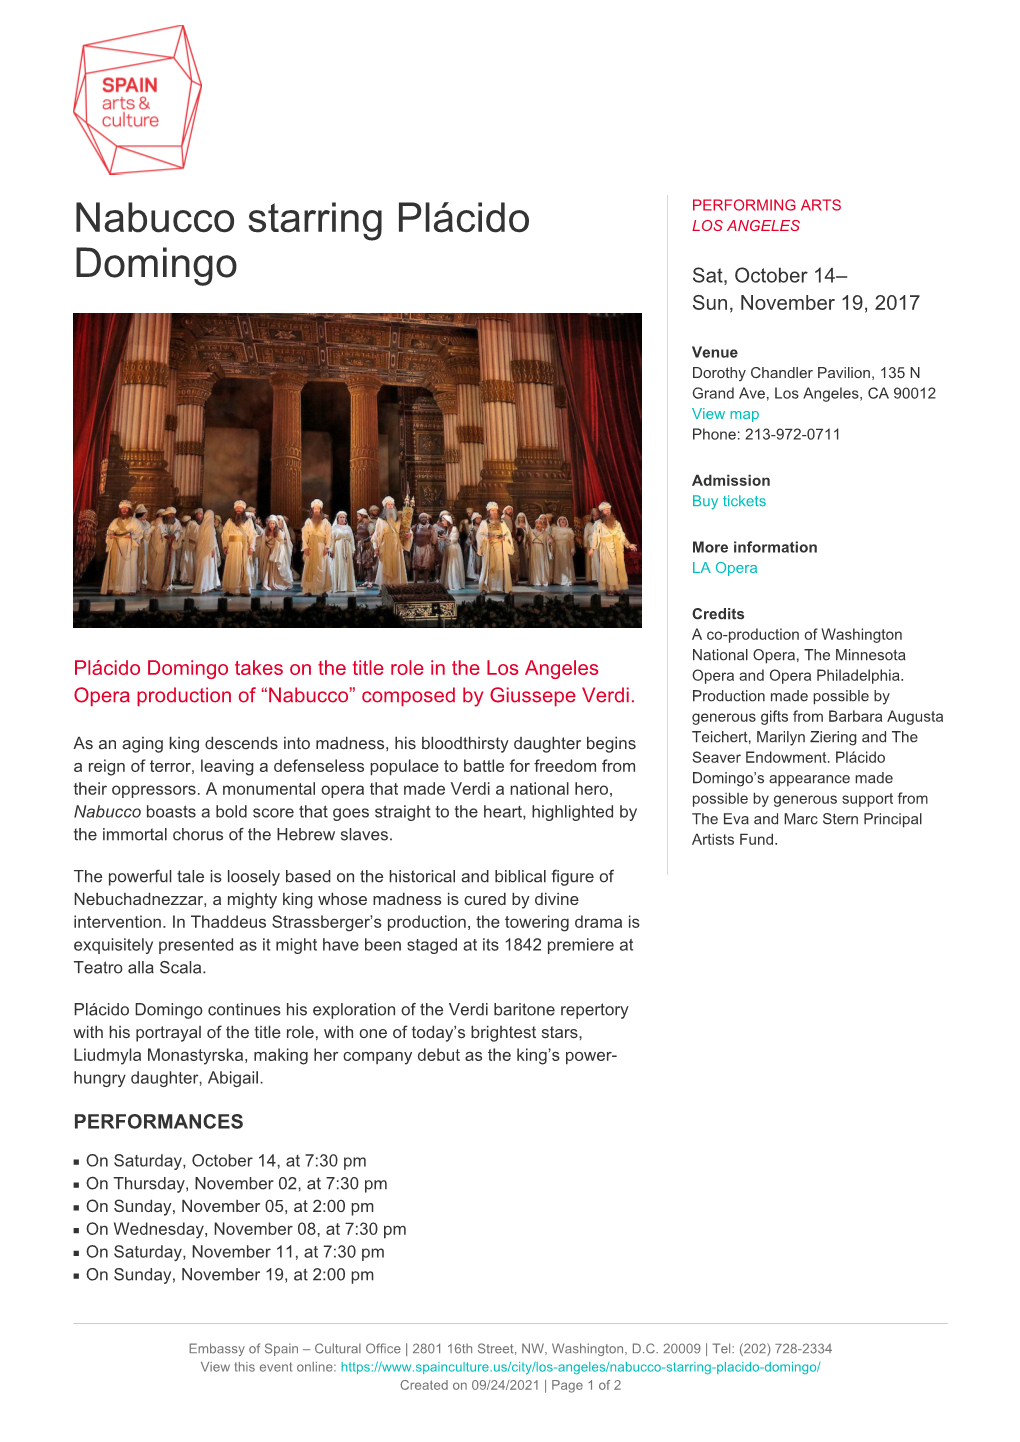 Nabucco Starring Plácido Domingo